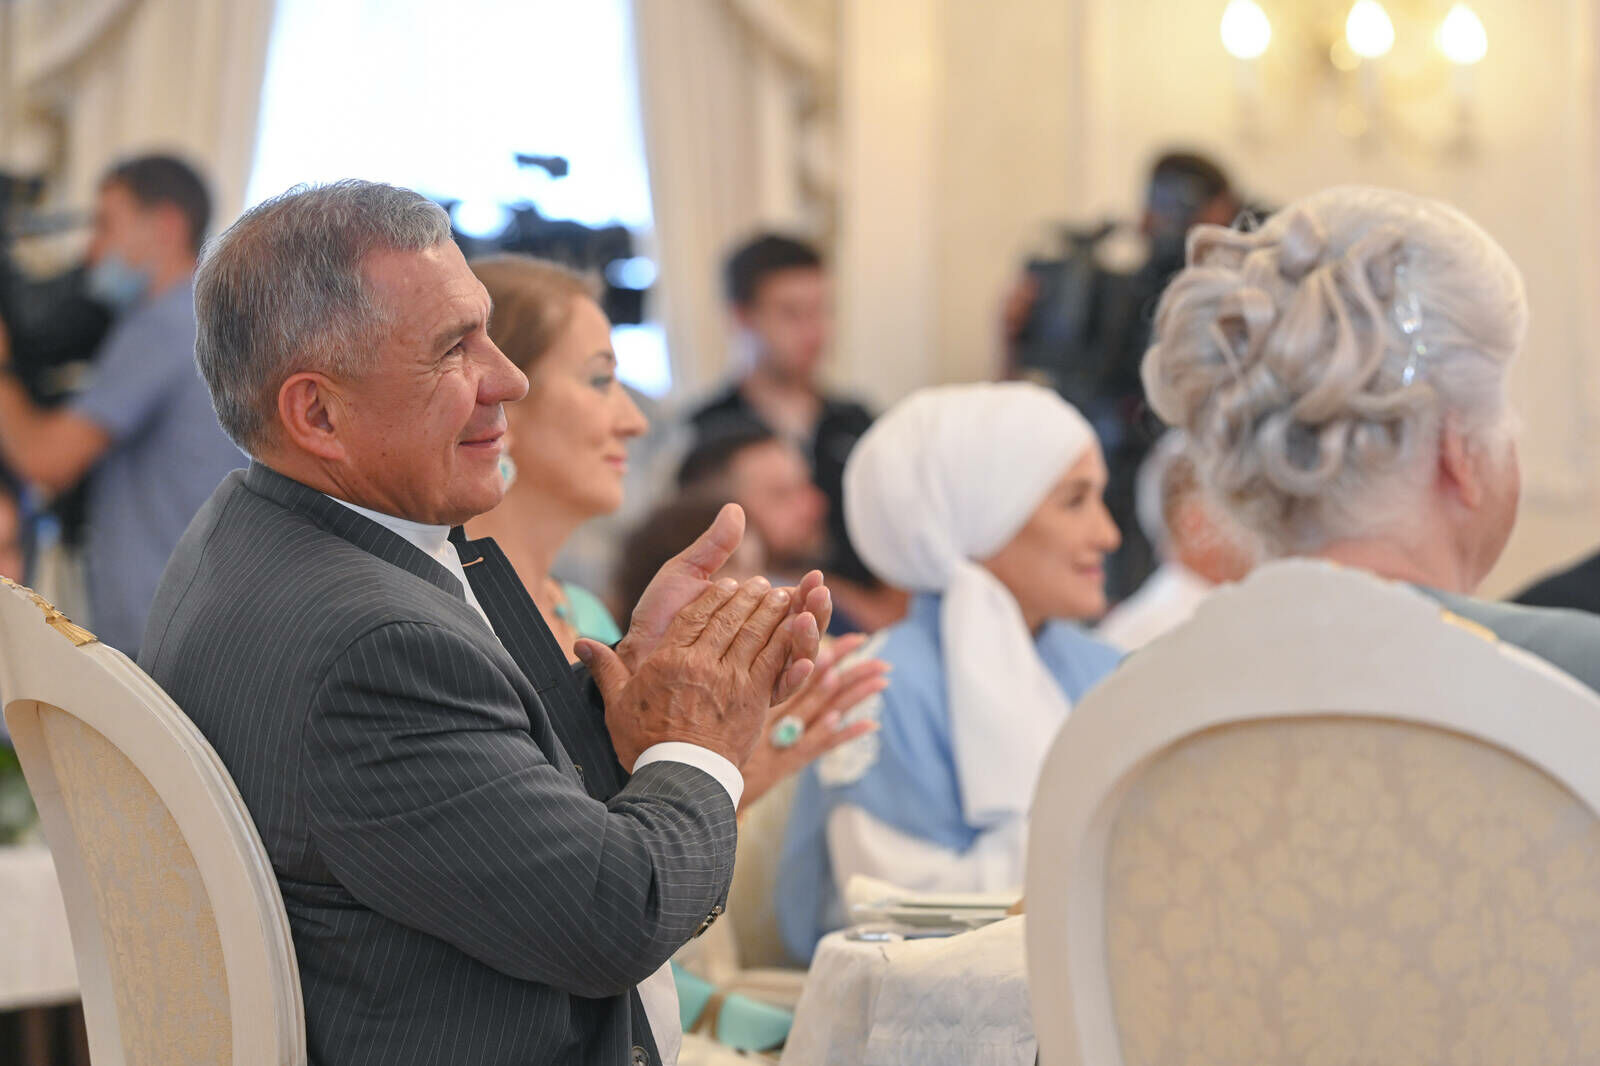 Рустам Минниханов с&nbsp;супругой приняли в Кремле 48&nbsp;татарстанских семей